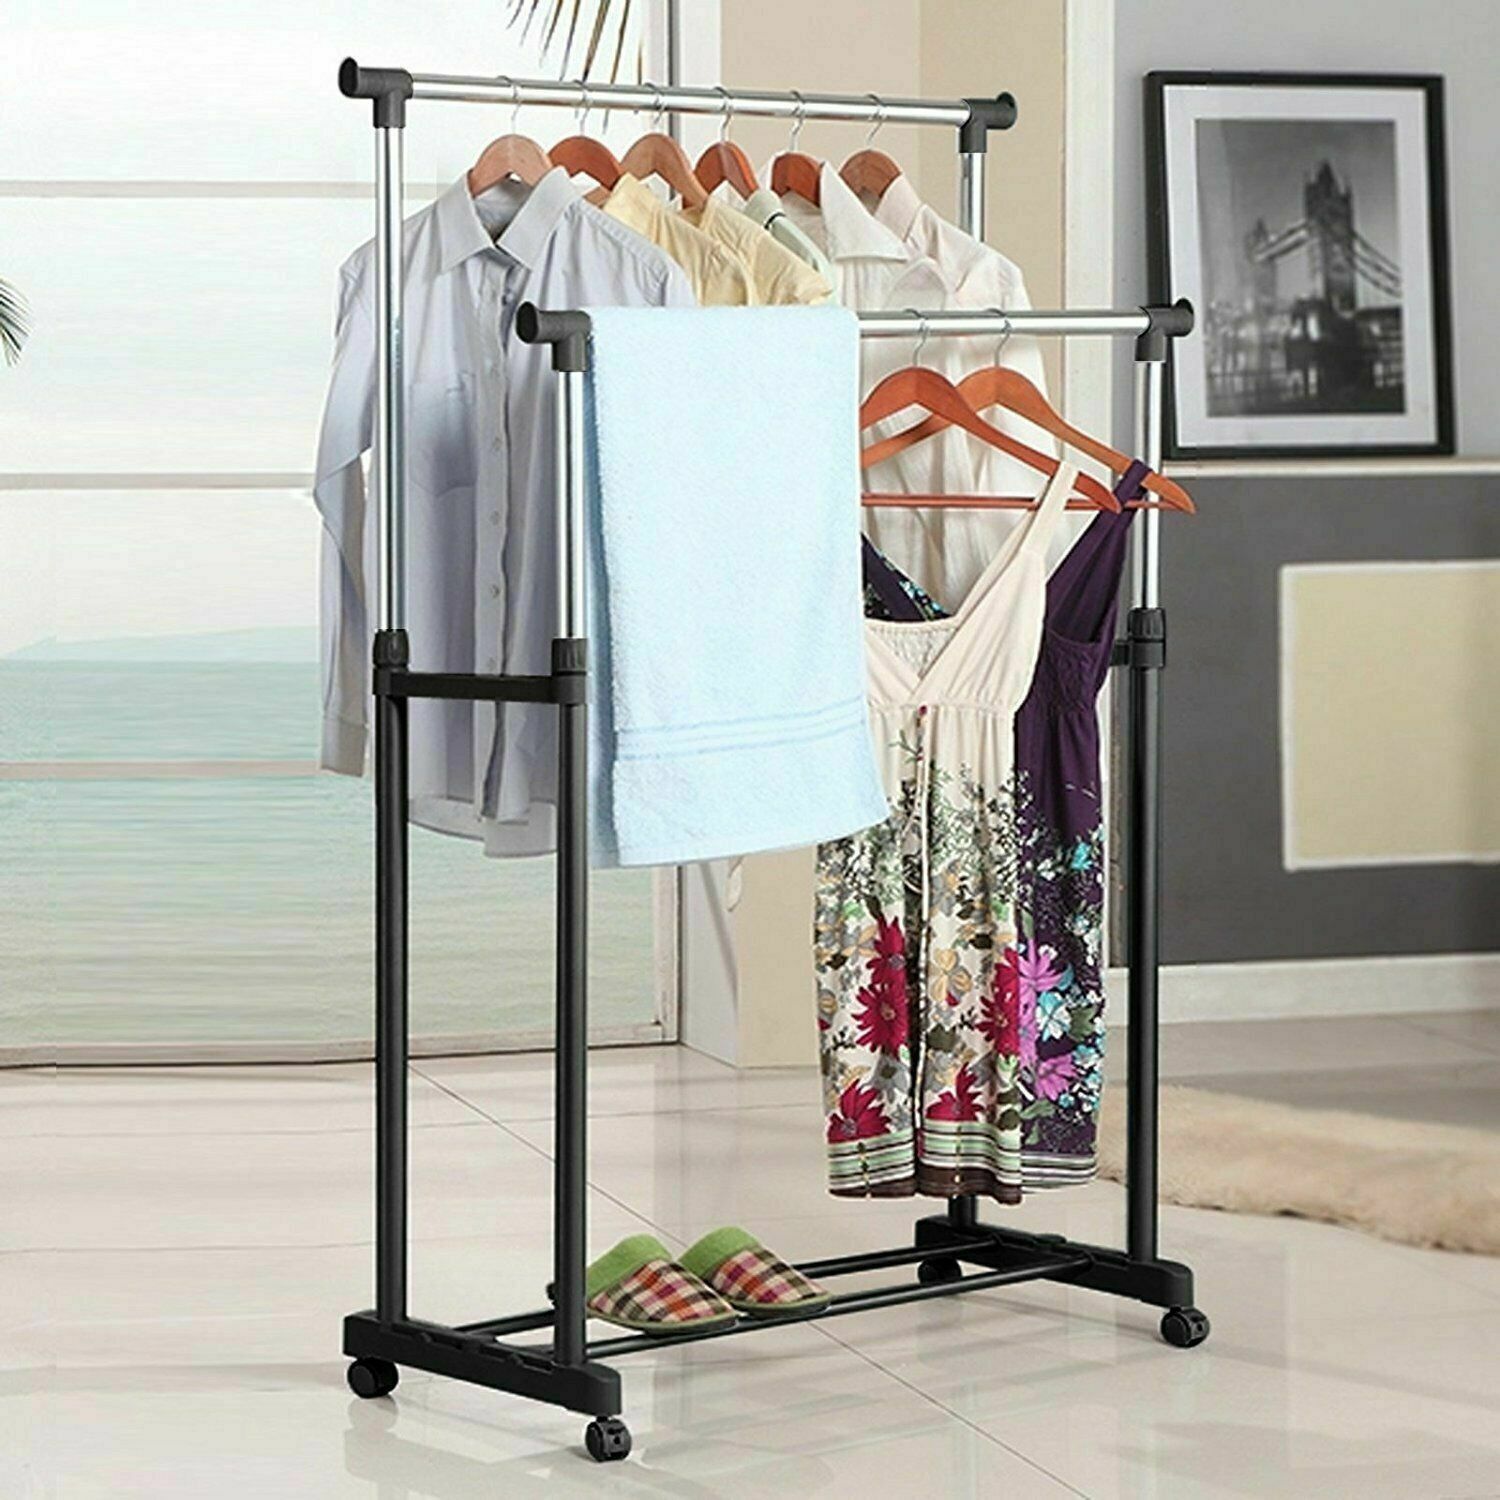 NEW Outdoor Drying Rack Indoor Clothes Hanger Garment Rack for Bedroom Storage area Backyard